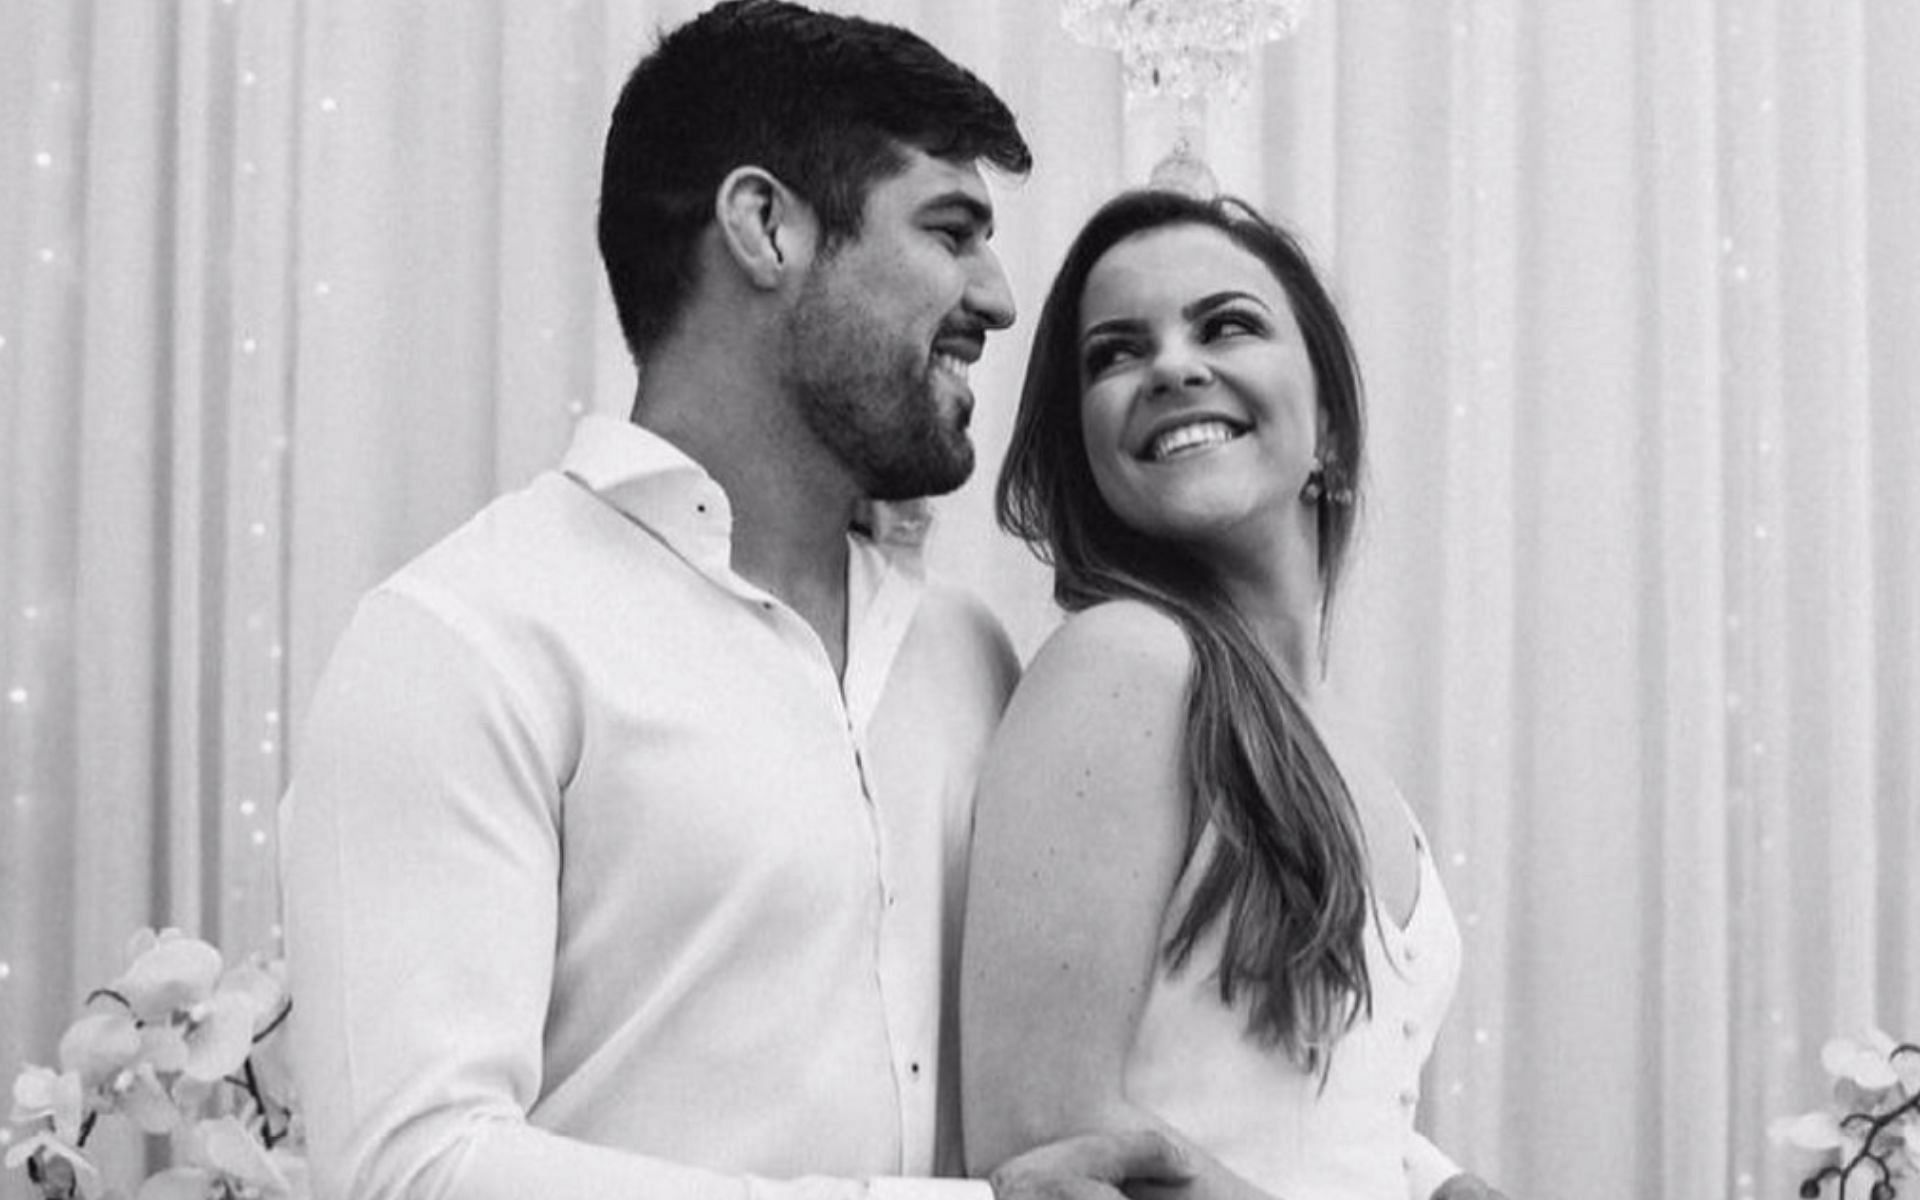 Vicente Luque and his wife Carol Silveira. [via Instagram @carolsilveira]